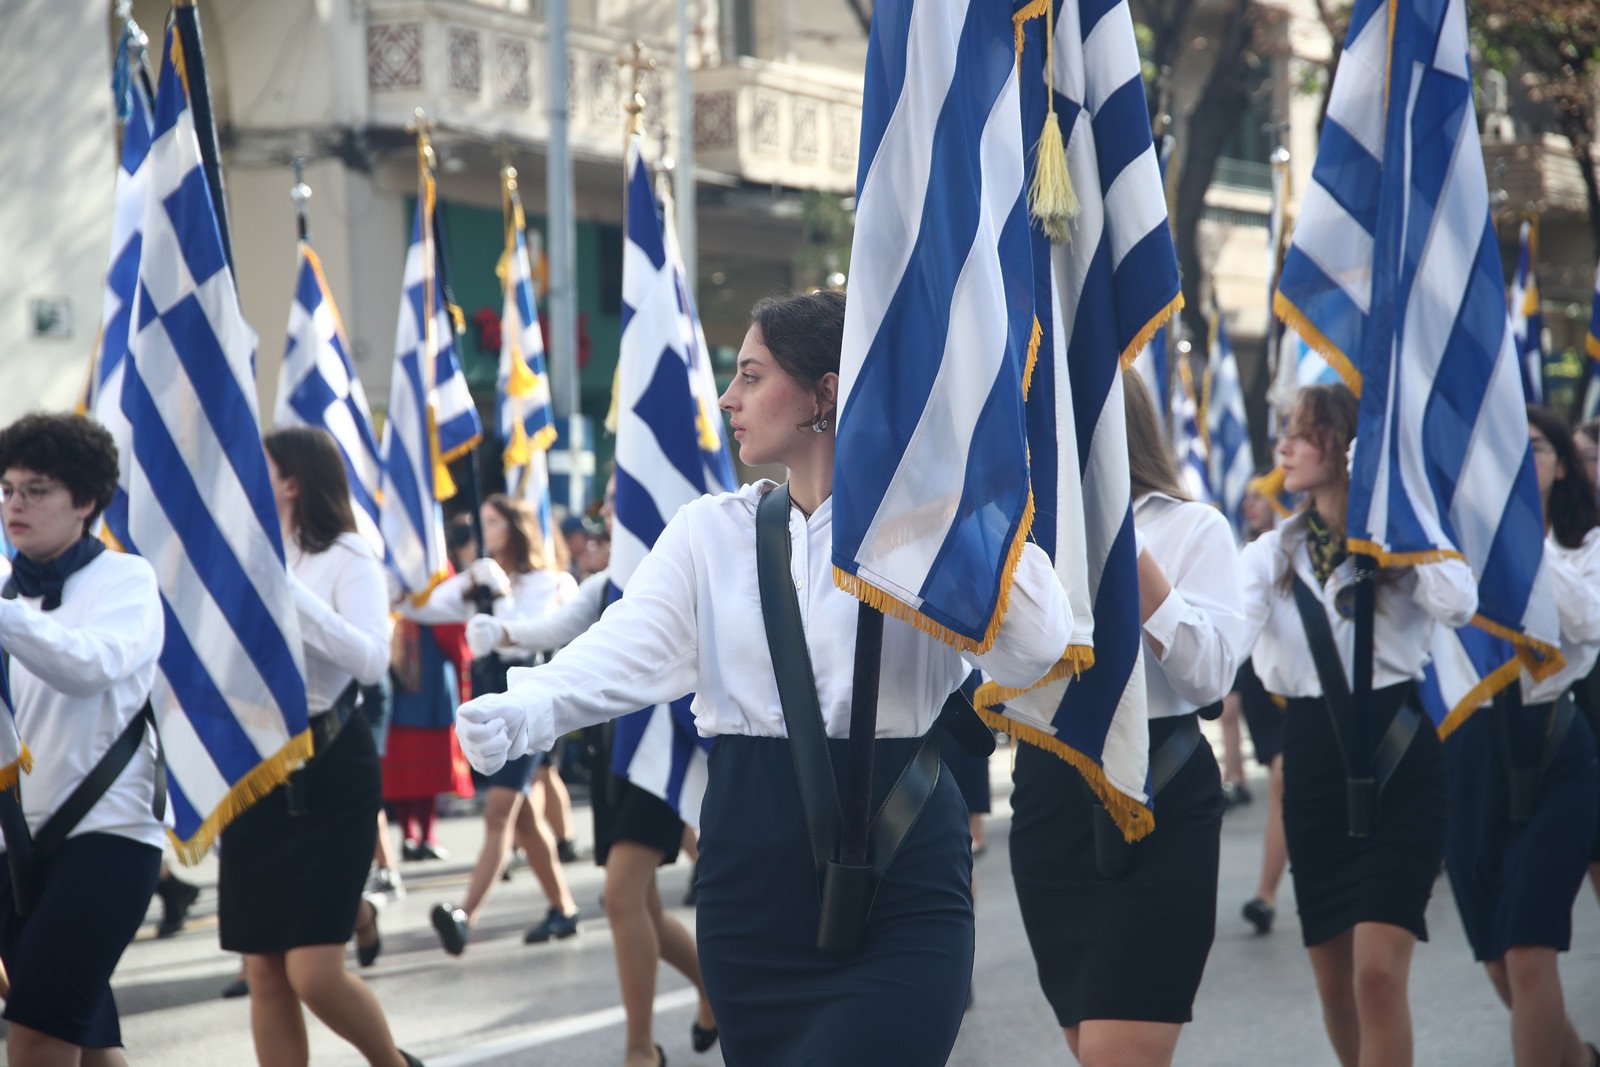 28η Οκτωβρίου: Ποιοι δρόμοι θα παραμείνουν κλειστοί σε Αθήνα και Πειραιά